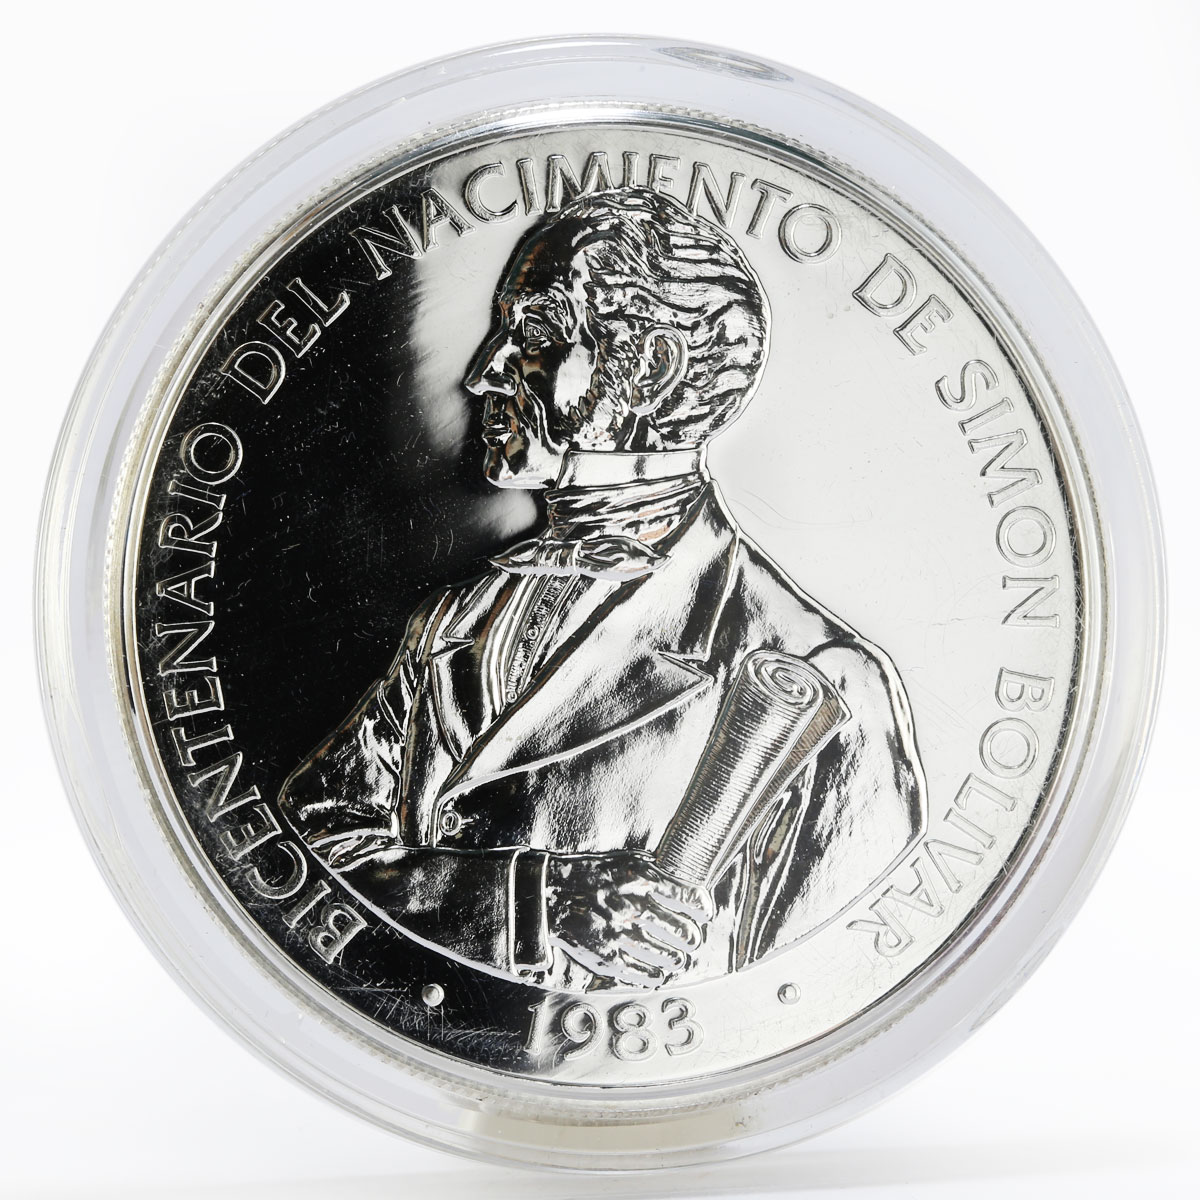 Panama 20 balboas De Simon Bolivar proof silver coin 1983